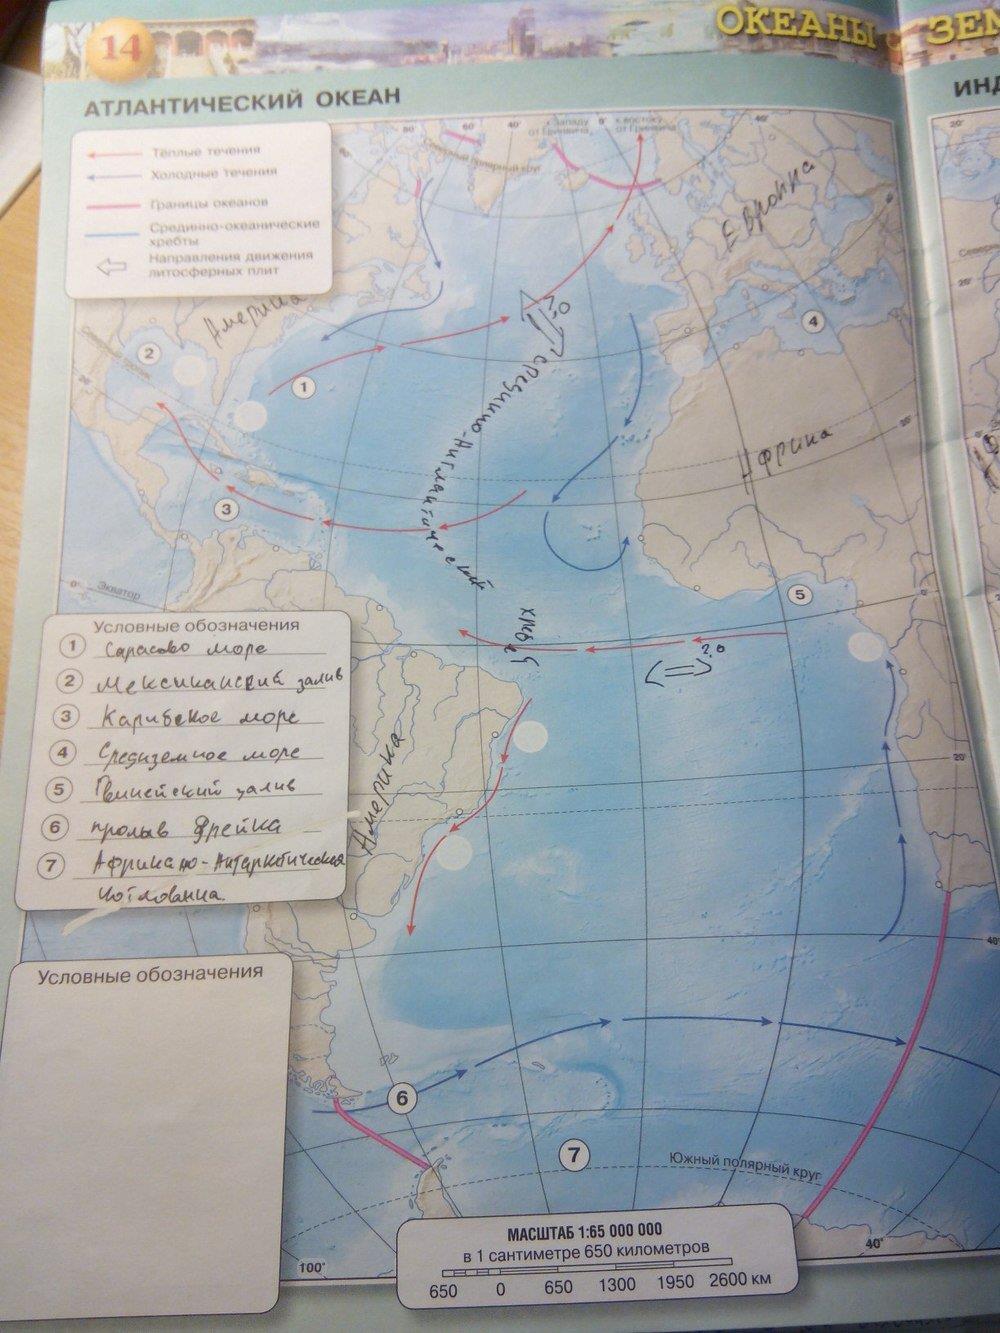 Контурные карты 7 класс география стр 27. Атлантический океан 7 класс география контурная карта. Атлантический океан контурная карта 7 класс готовая стр 14 Котляр. Контурная карта по географии 7 класс сфера стр 17 индийский океан.